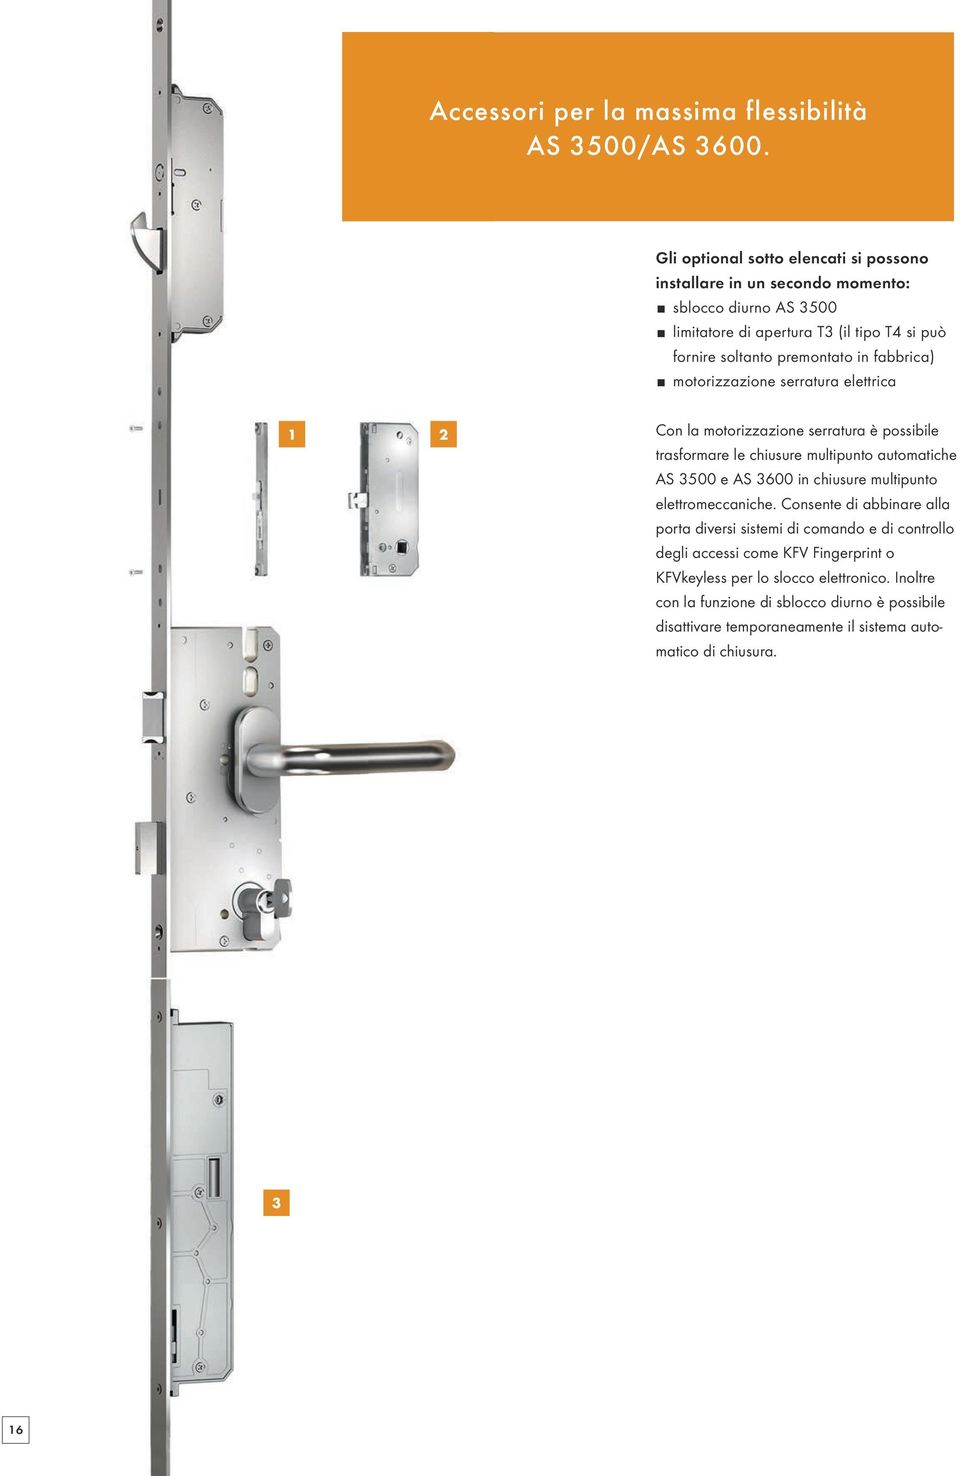 fabbrica) motorizzazione serratura elettrica 1 2 Con la motorizzazione serratura è possibile trasformare le chiusure multipunto automatiche AS 3500 e AS 3600 in chiusure